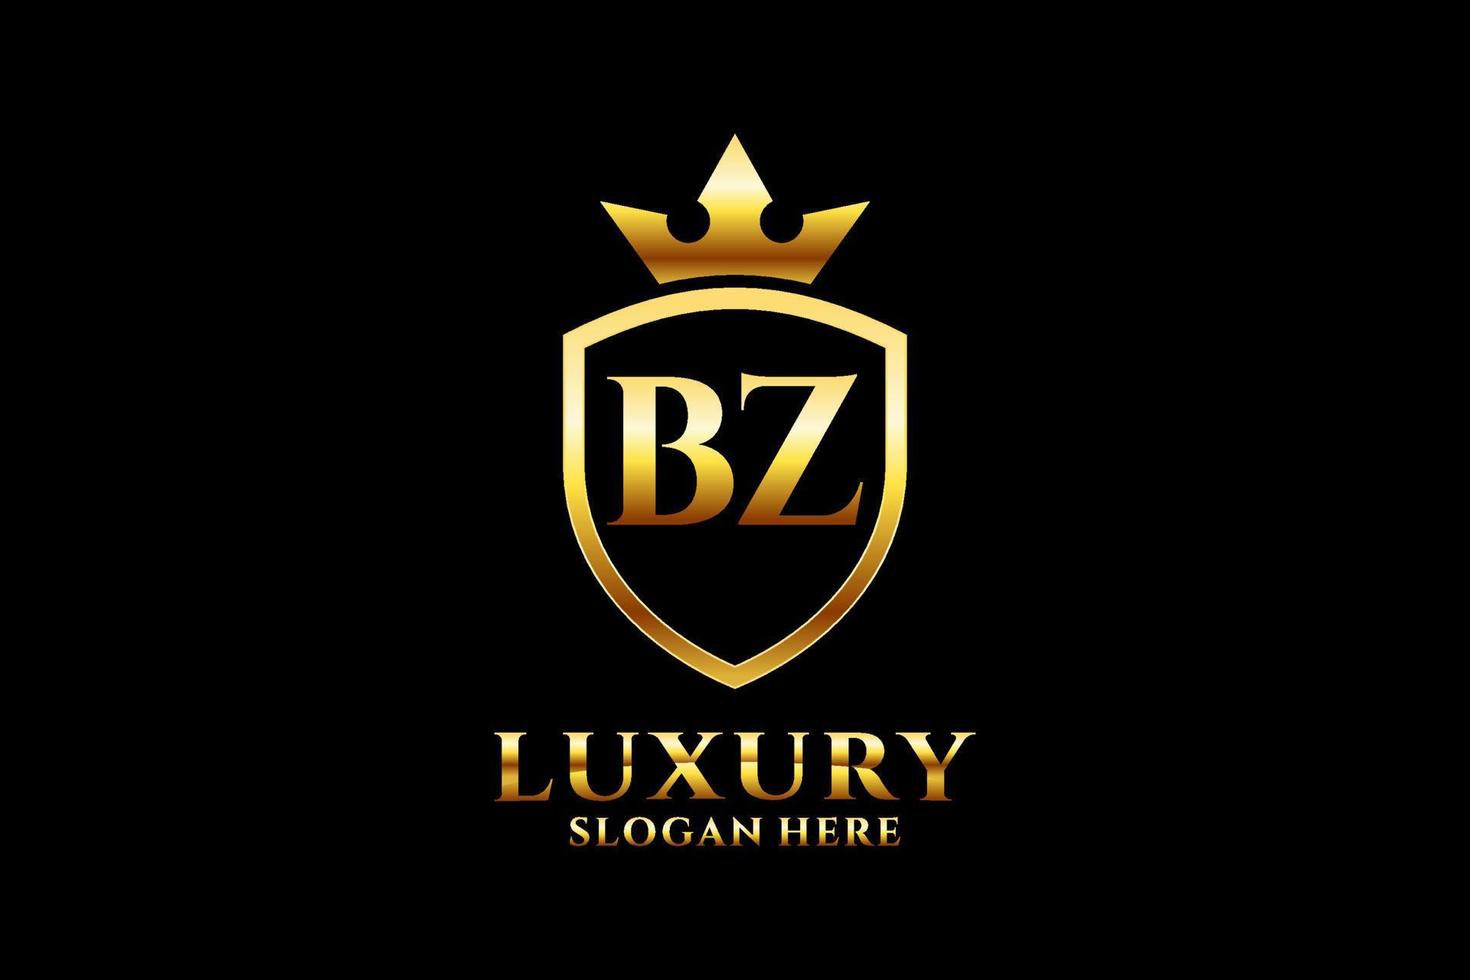 Initial bz elegantes Luxus-Monogramm-Logo oder Abzeichen-Vorlage mit Schriftrollen und Königskrone – perfekt für luxuriöse Branding-Projekte vektor